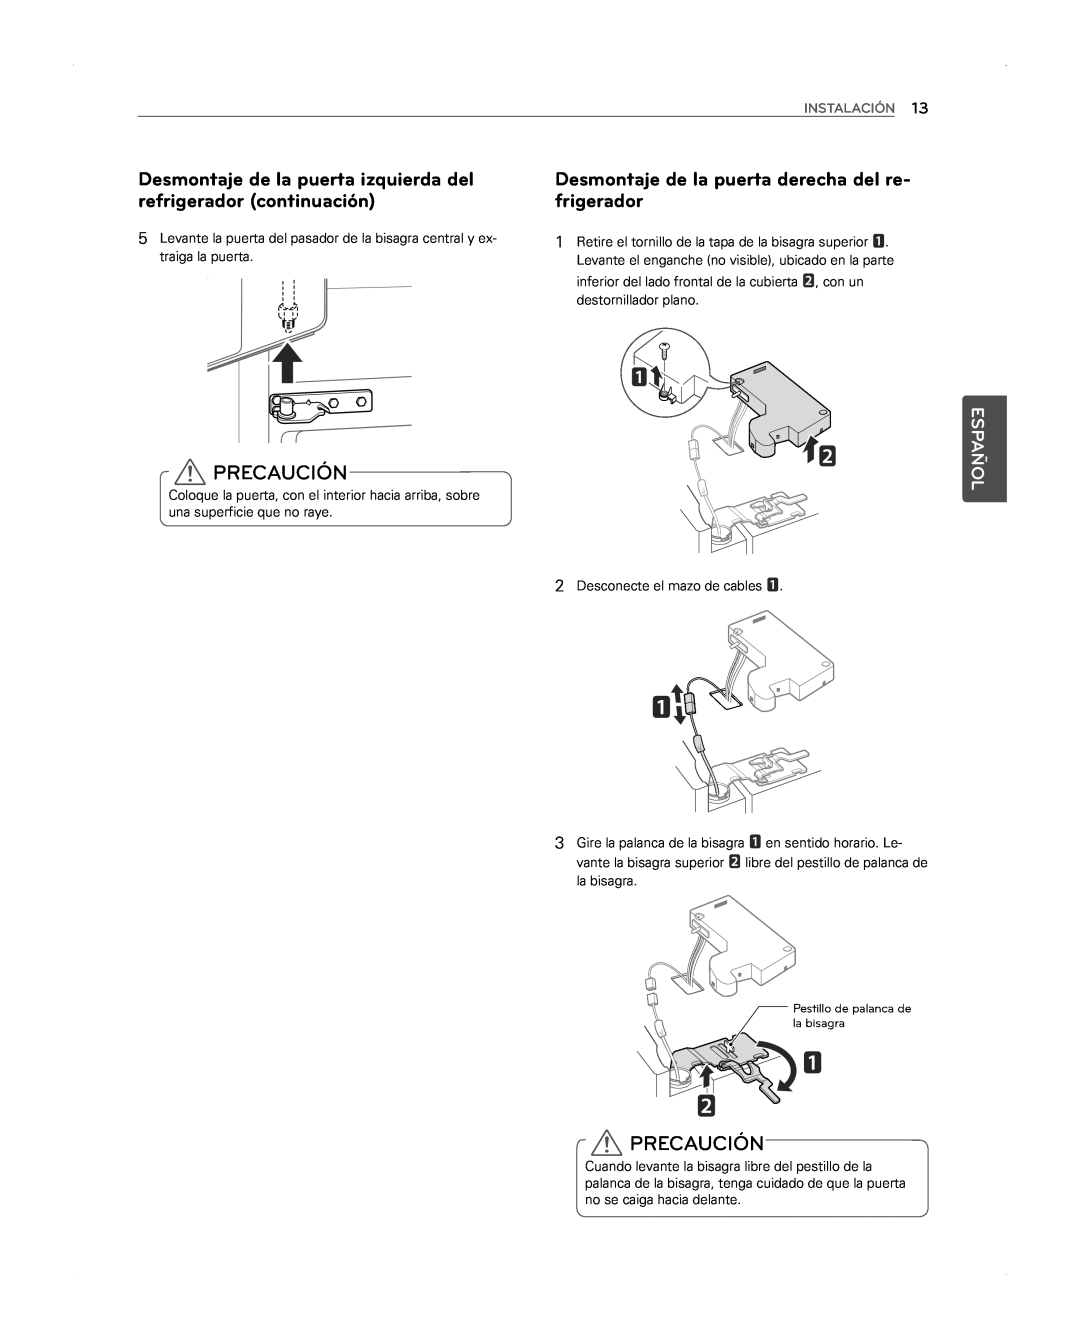 LG Electronics LFX31945ST owner manual Desmontaje de la puerta izquierda del refrigerador continuación, Precaución, Español 